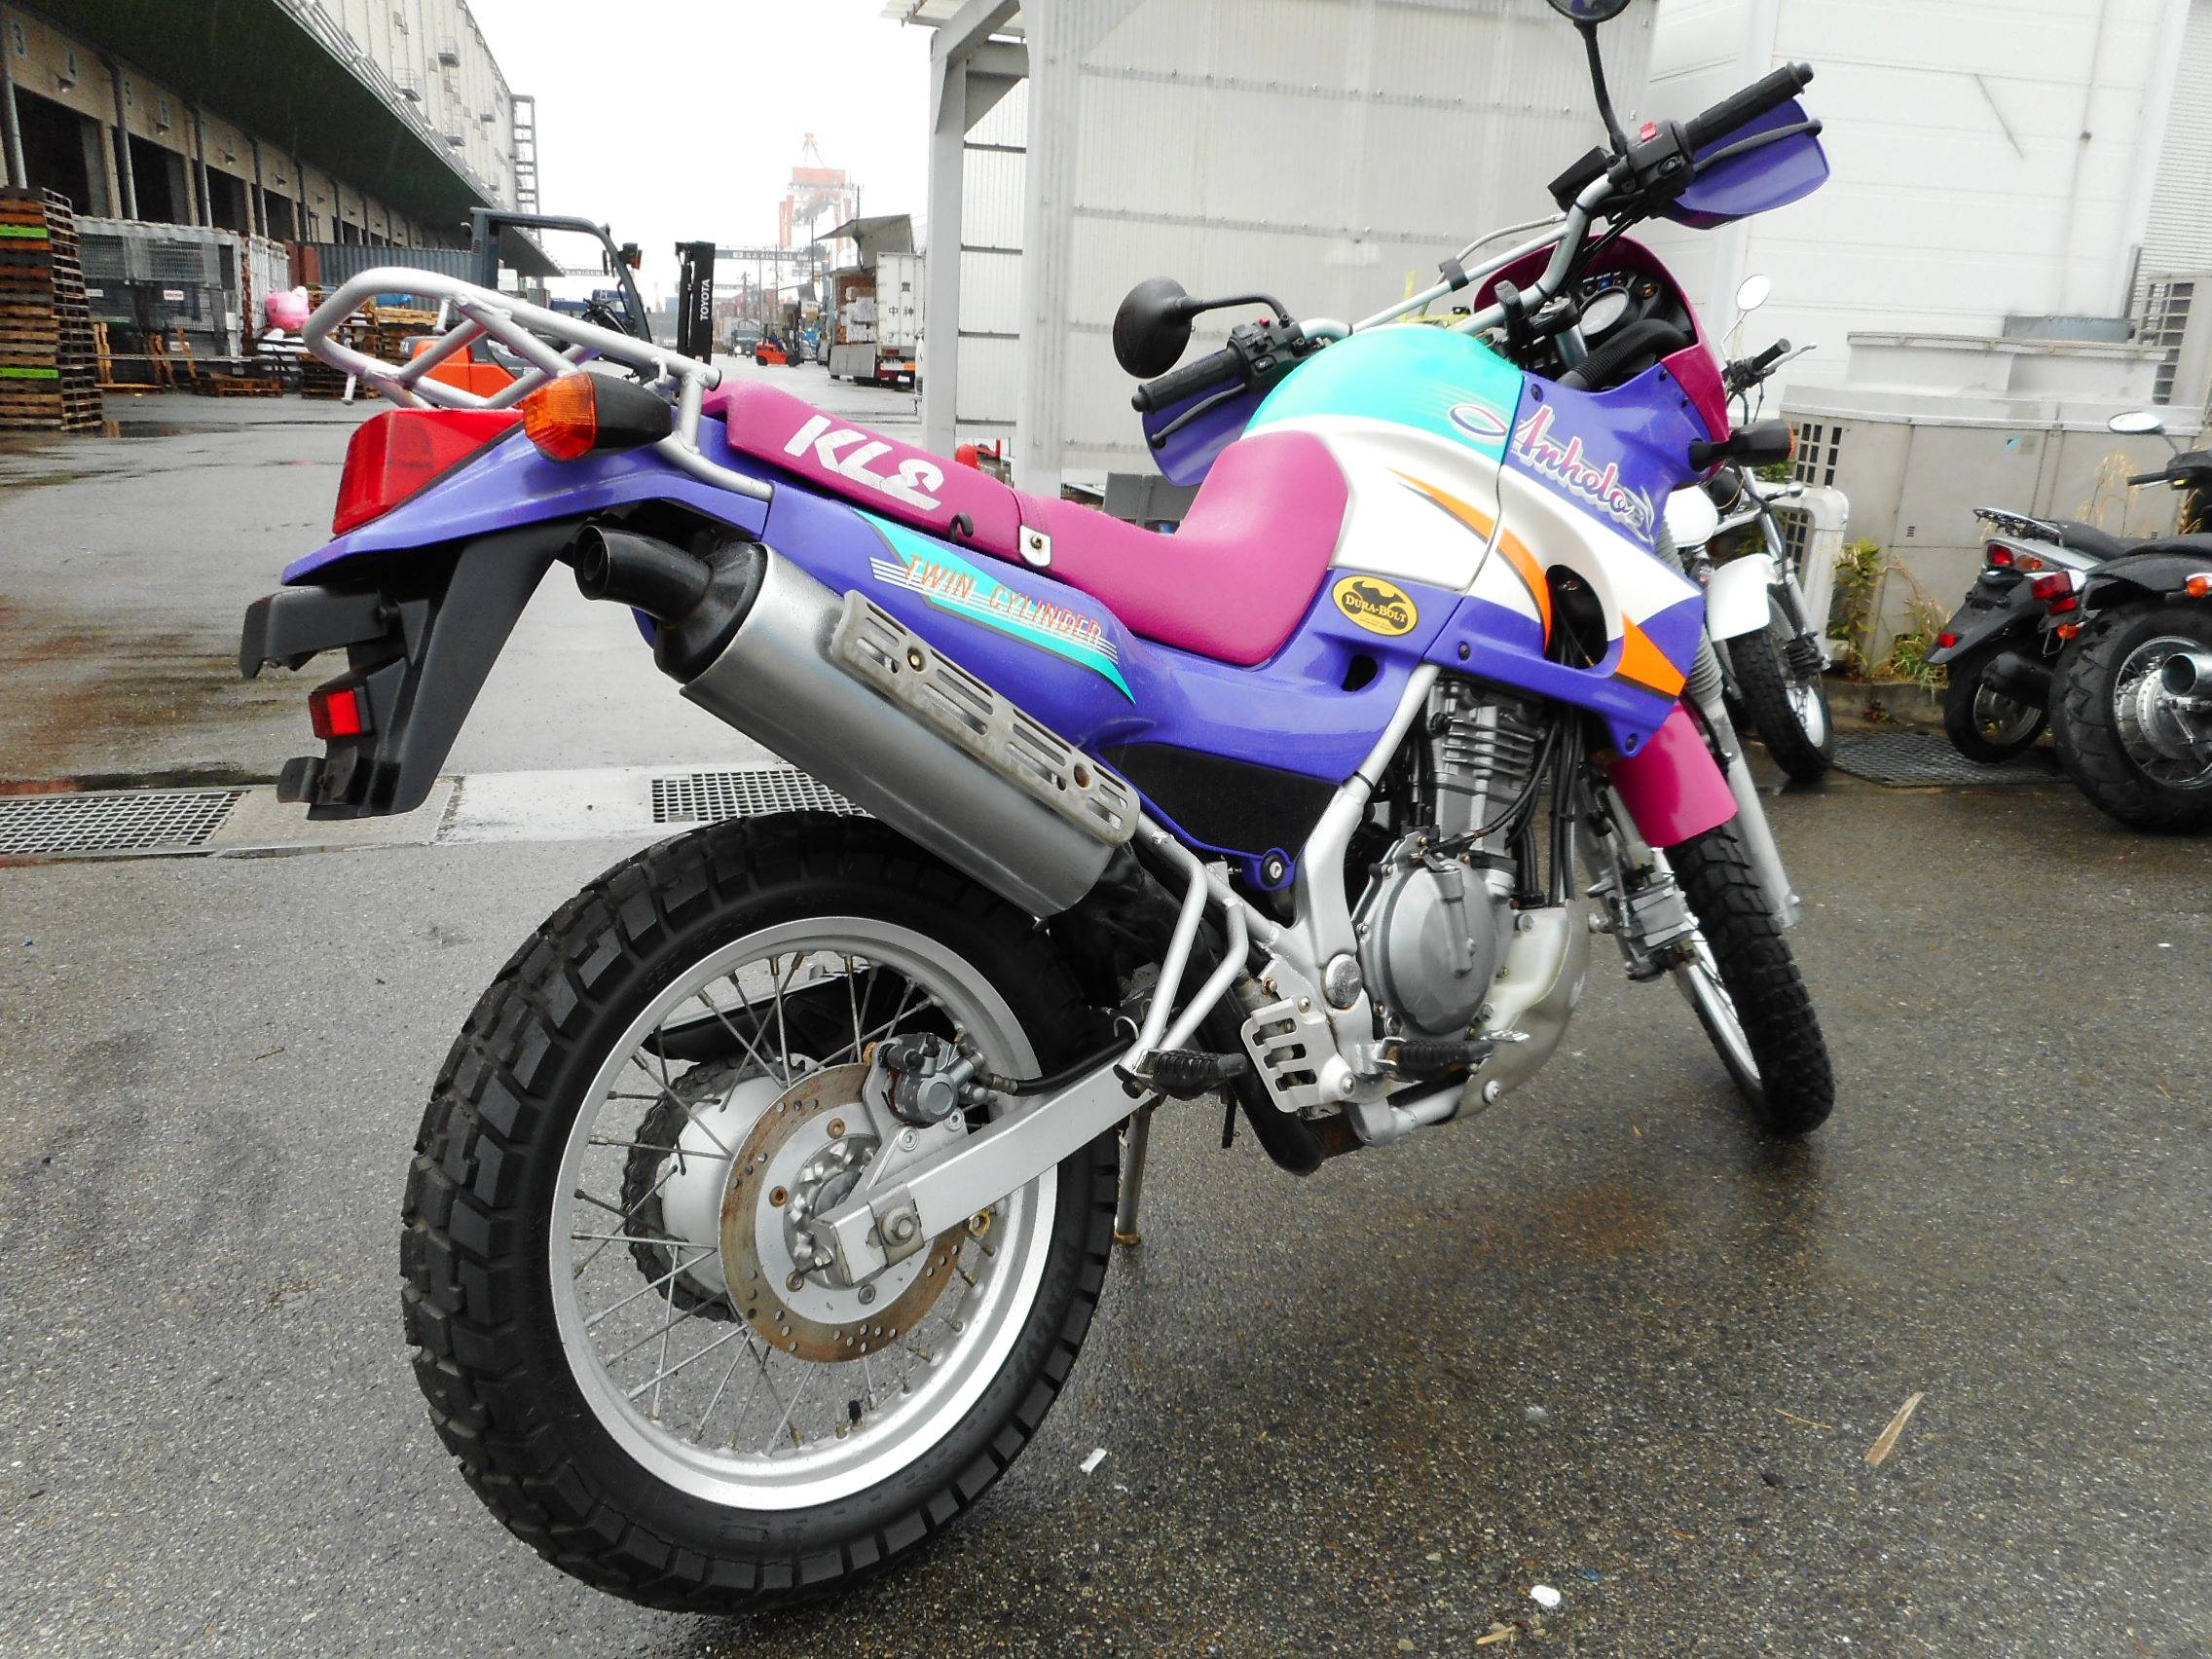 Yamaha wr250r, kawasaki klx250s и honda crf250l — софт эндуро 21 века